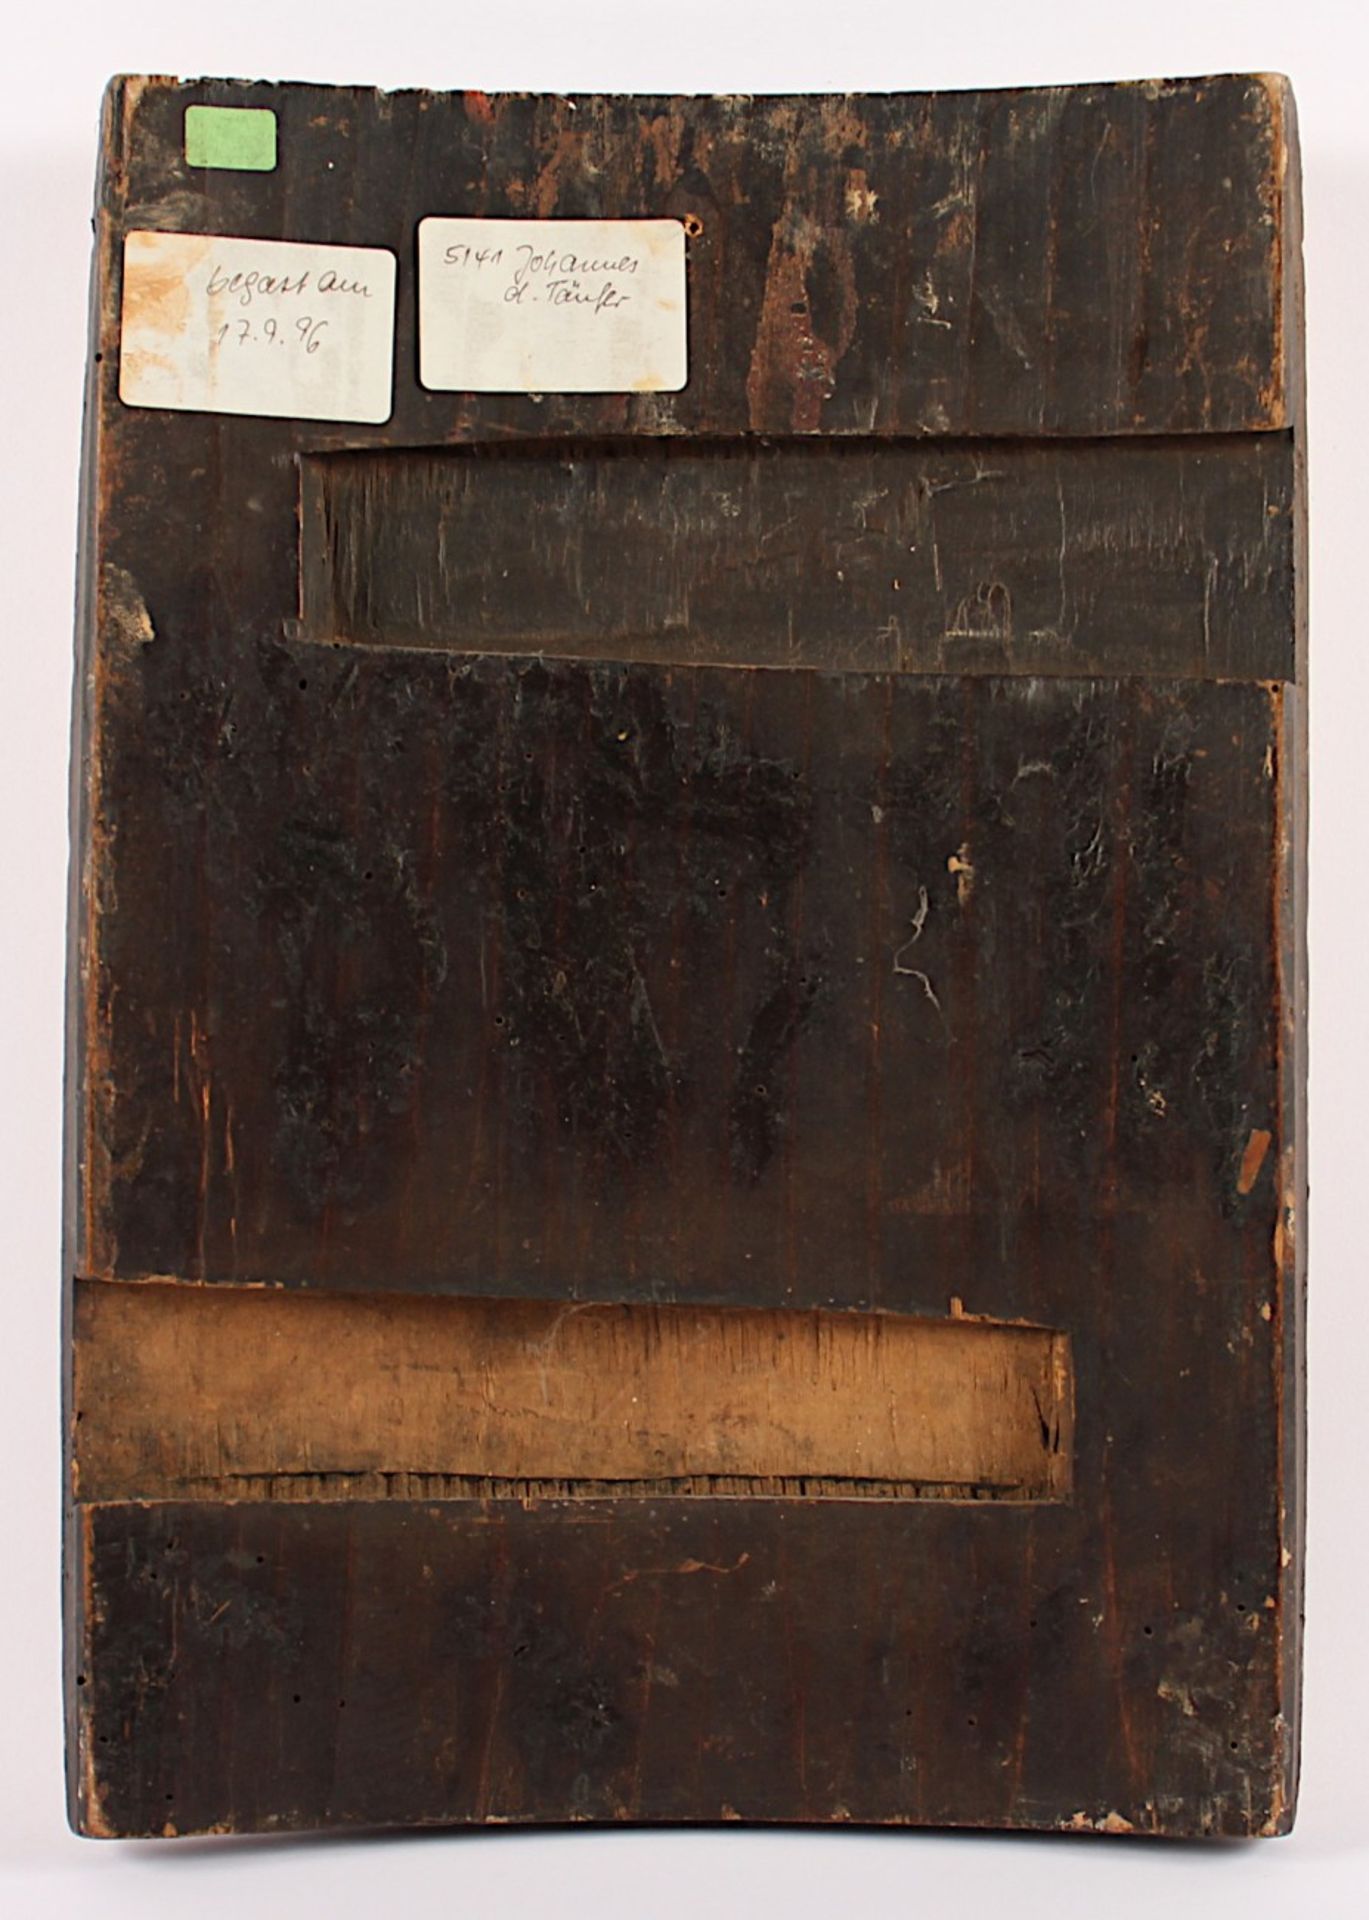 IKONE, "Johannes der Vorläufer", Tempera/Holz, 35 x 24,5, min.rest., RUSSLAND, um 1800 - Bild 2 aus 2